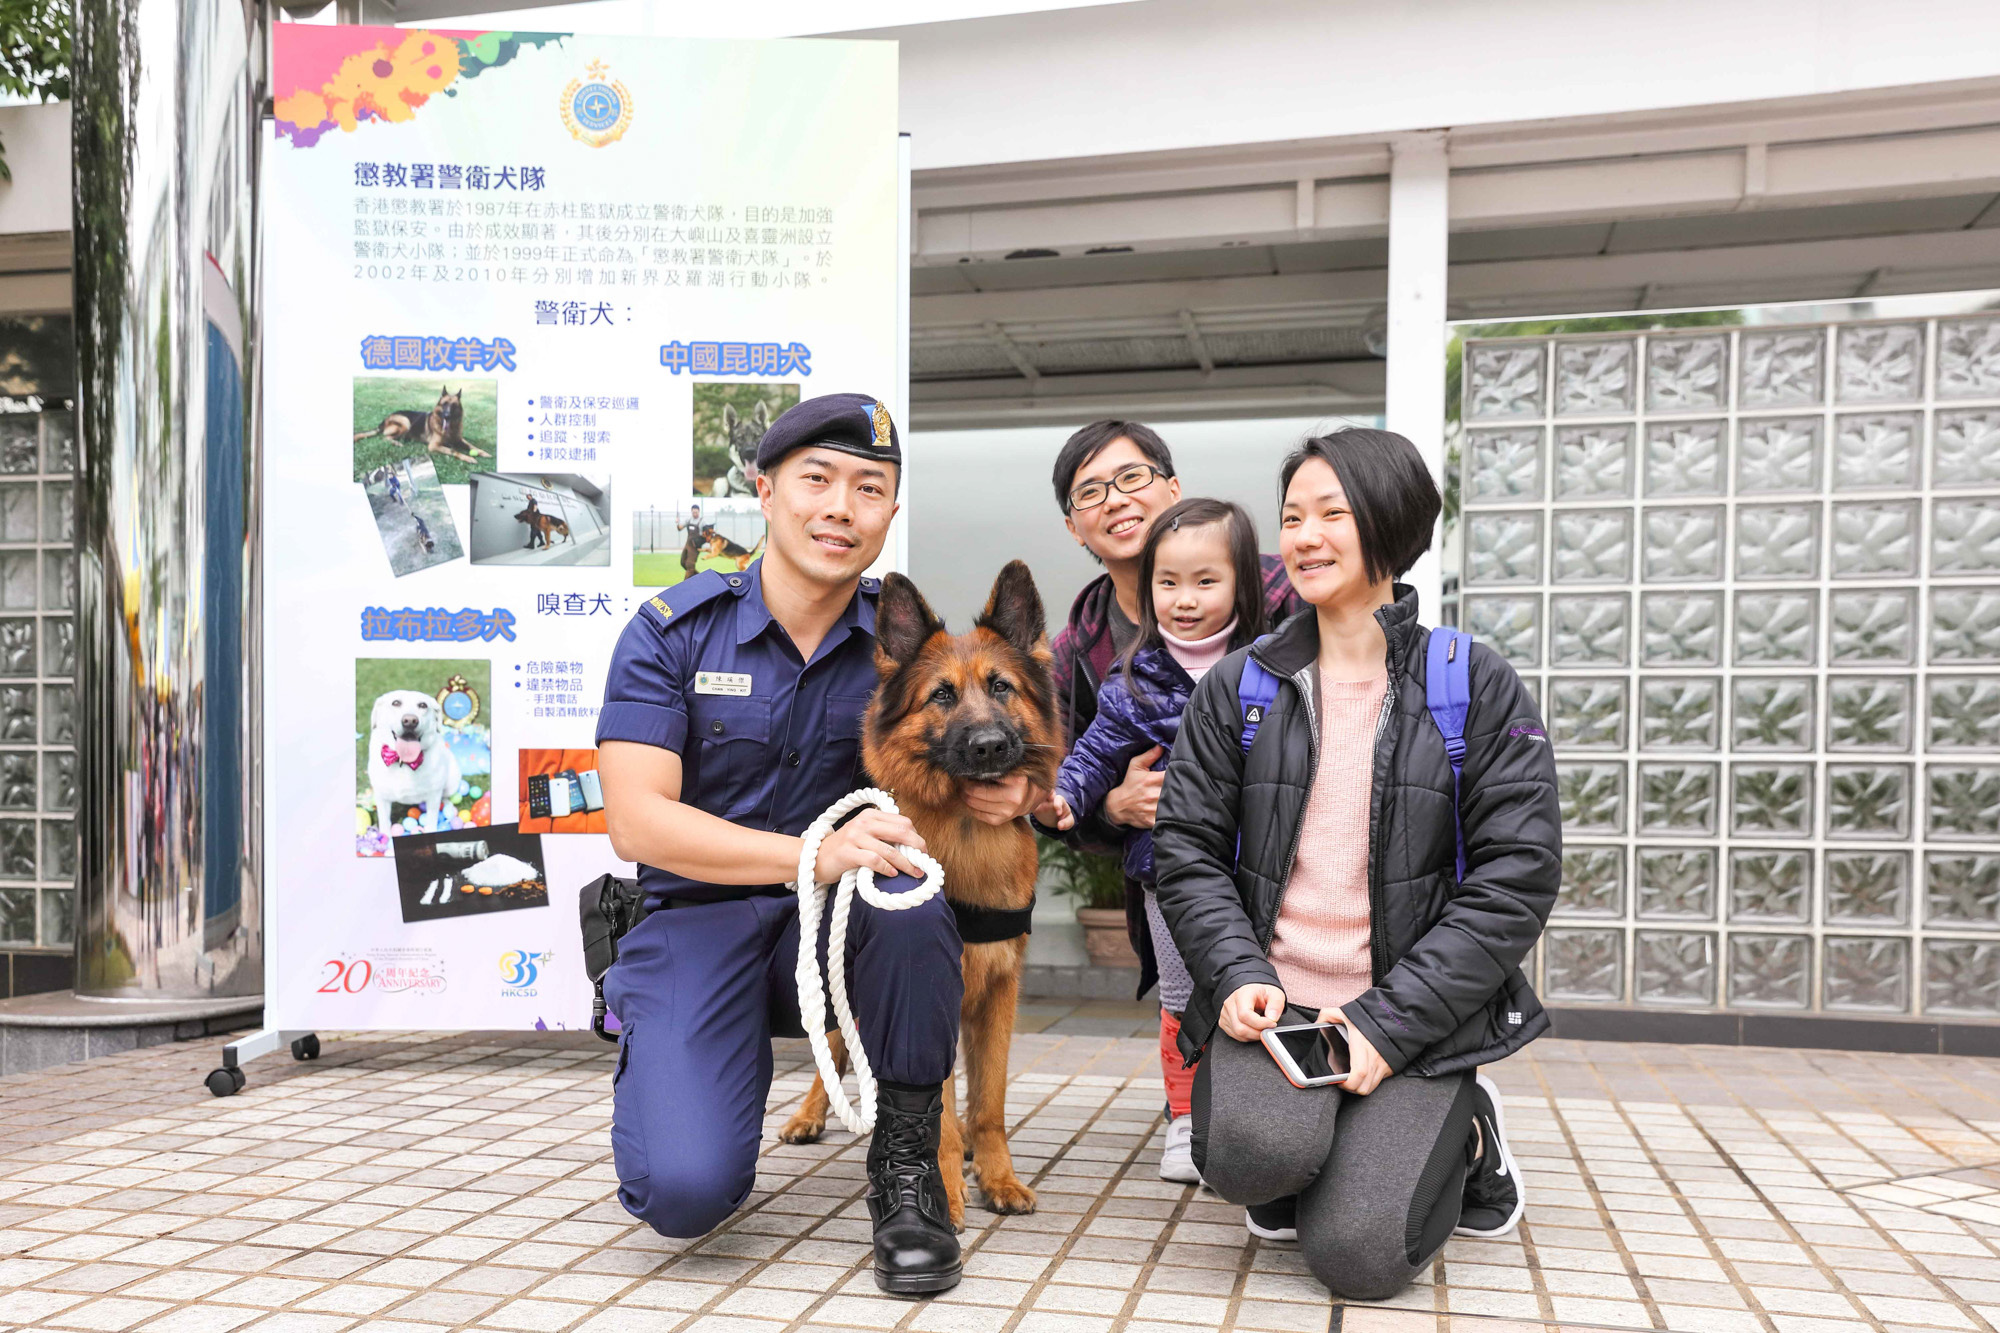 懲教人員及警衛犬於「懲教今昔35載」活動與參觀者合照。